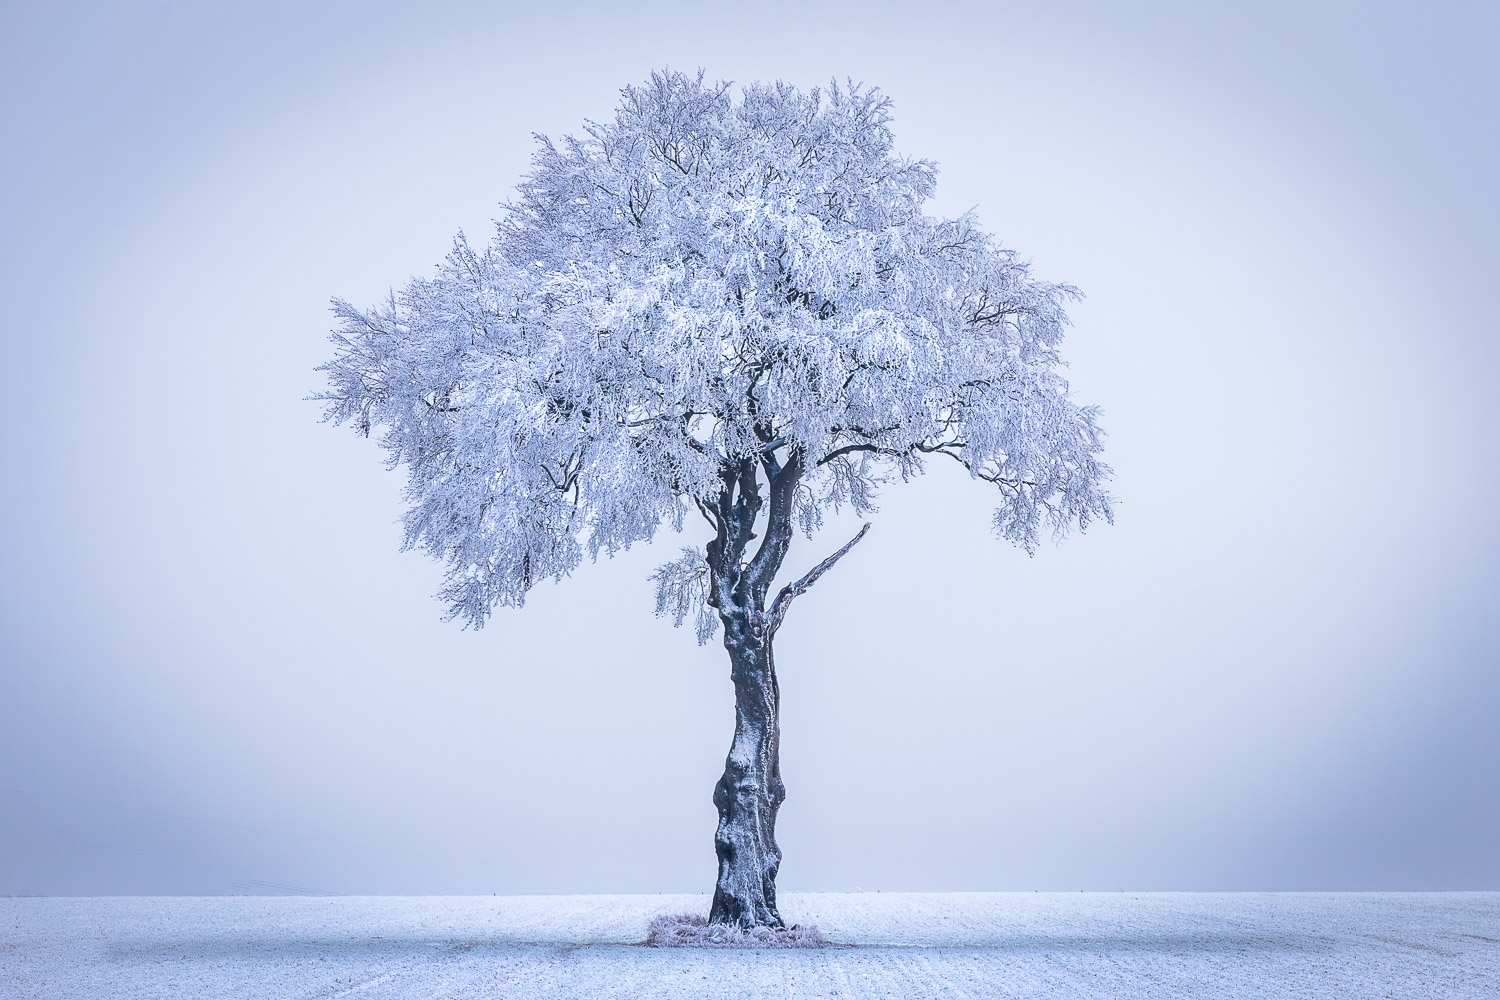 Tree, hoar frost